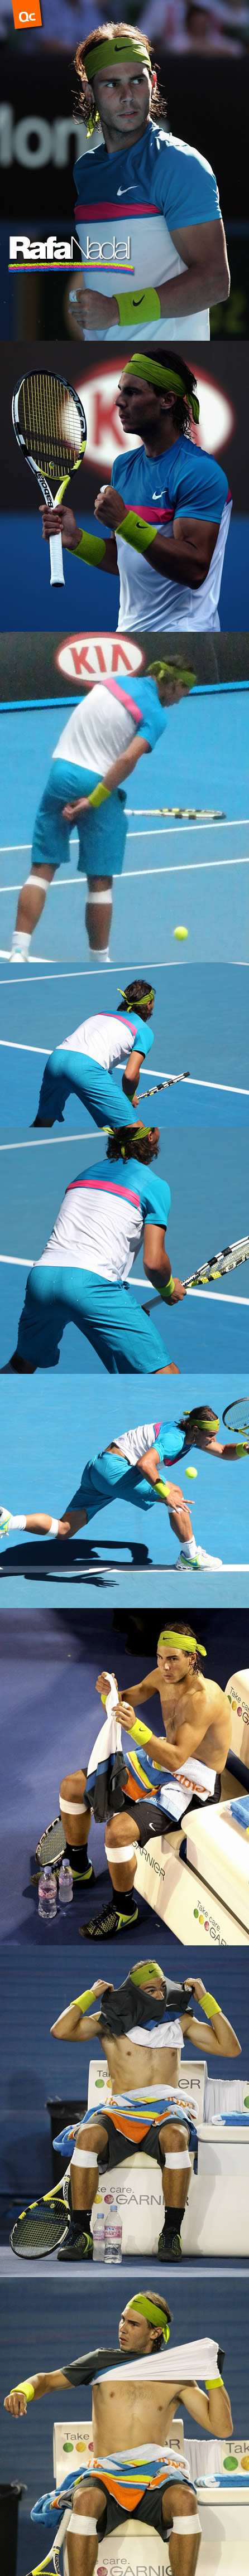 Rafa Nadal Vs. Roger Federer (2)